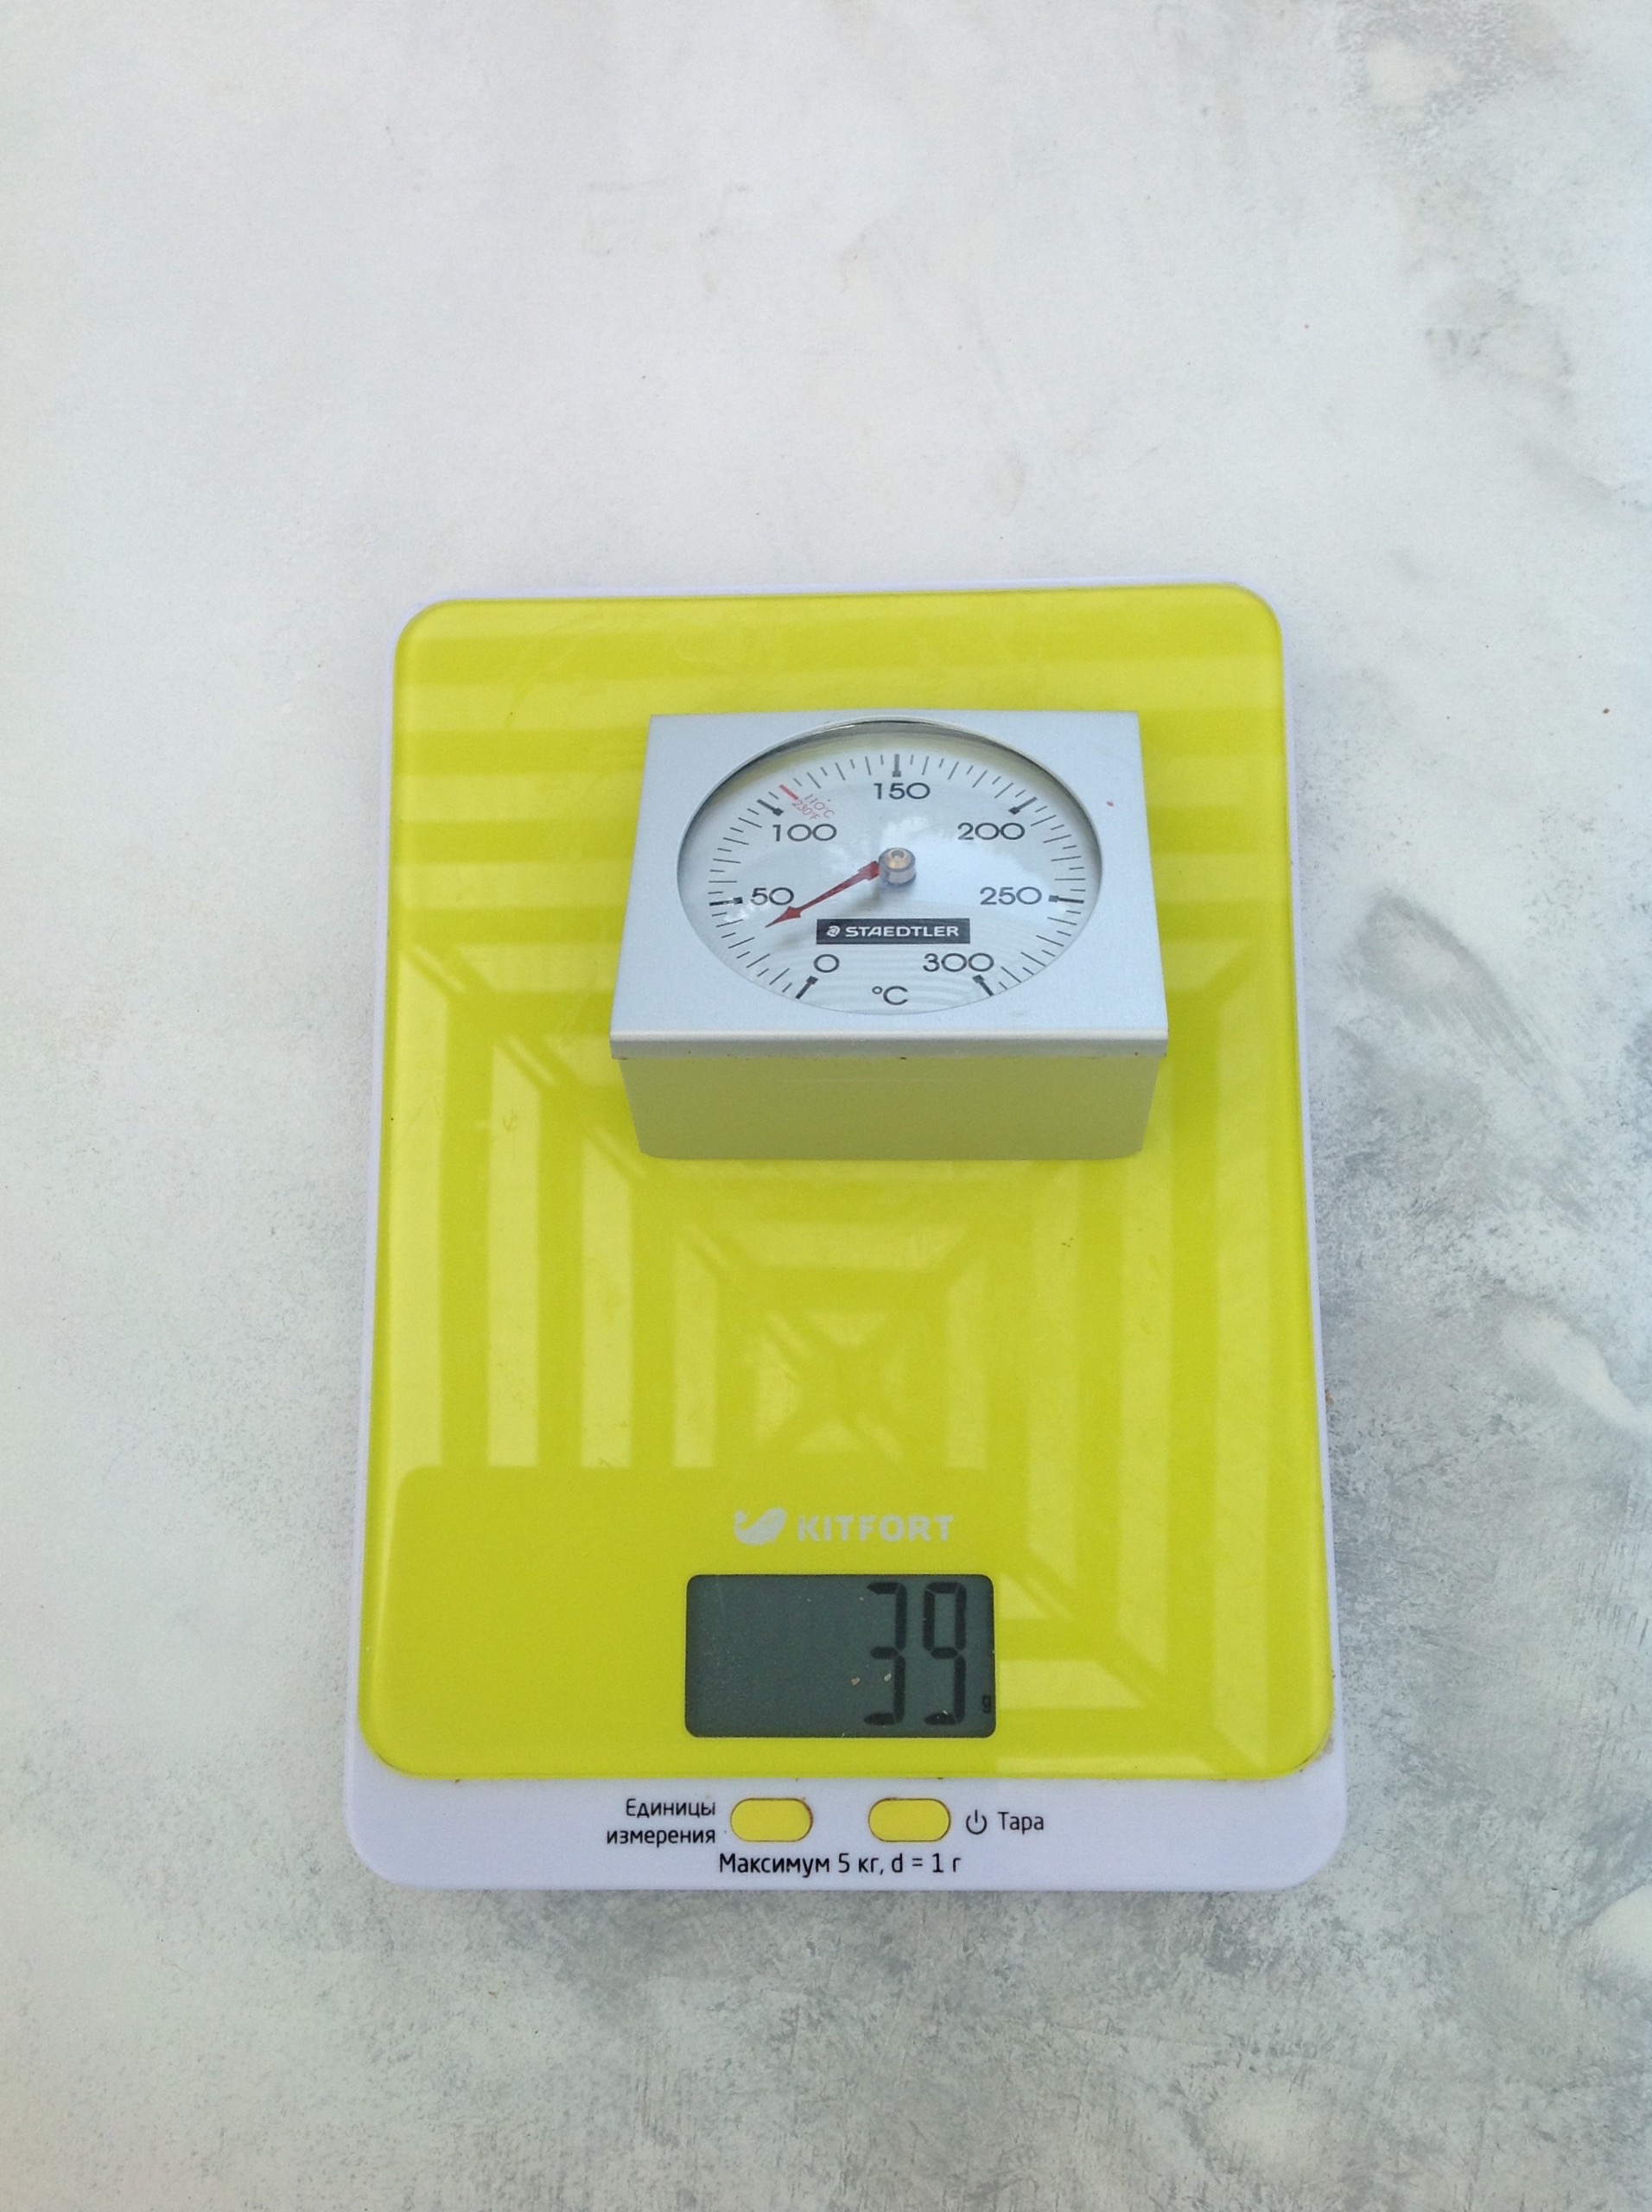 вес термометра для духовки fimo